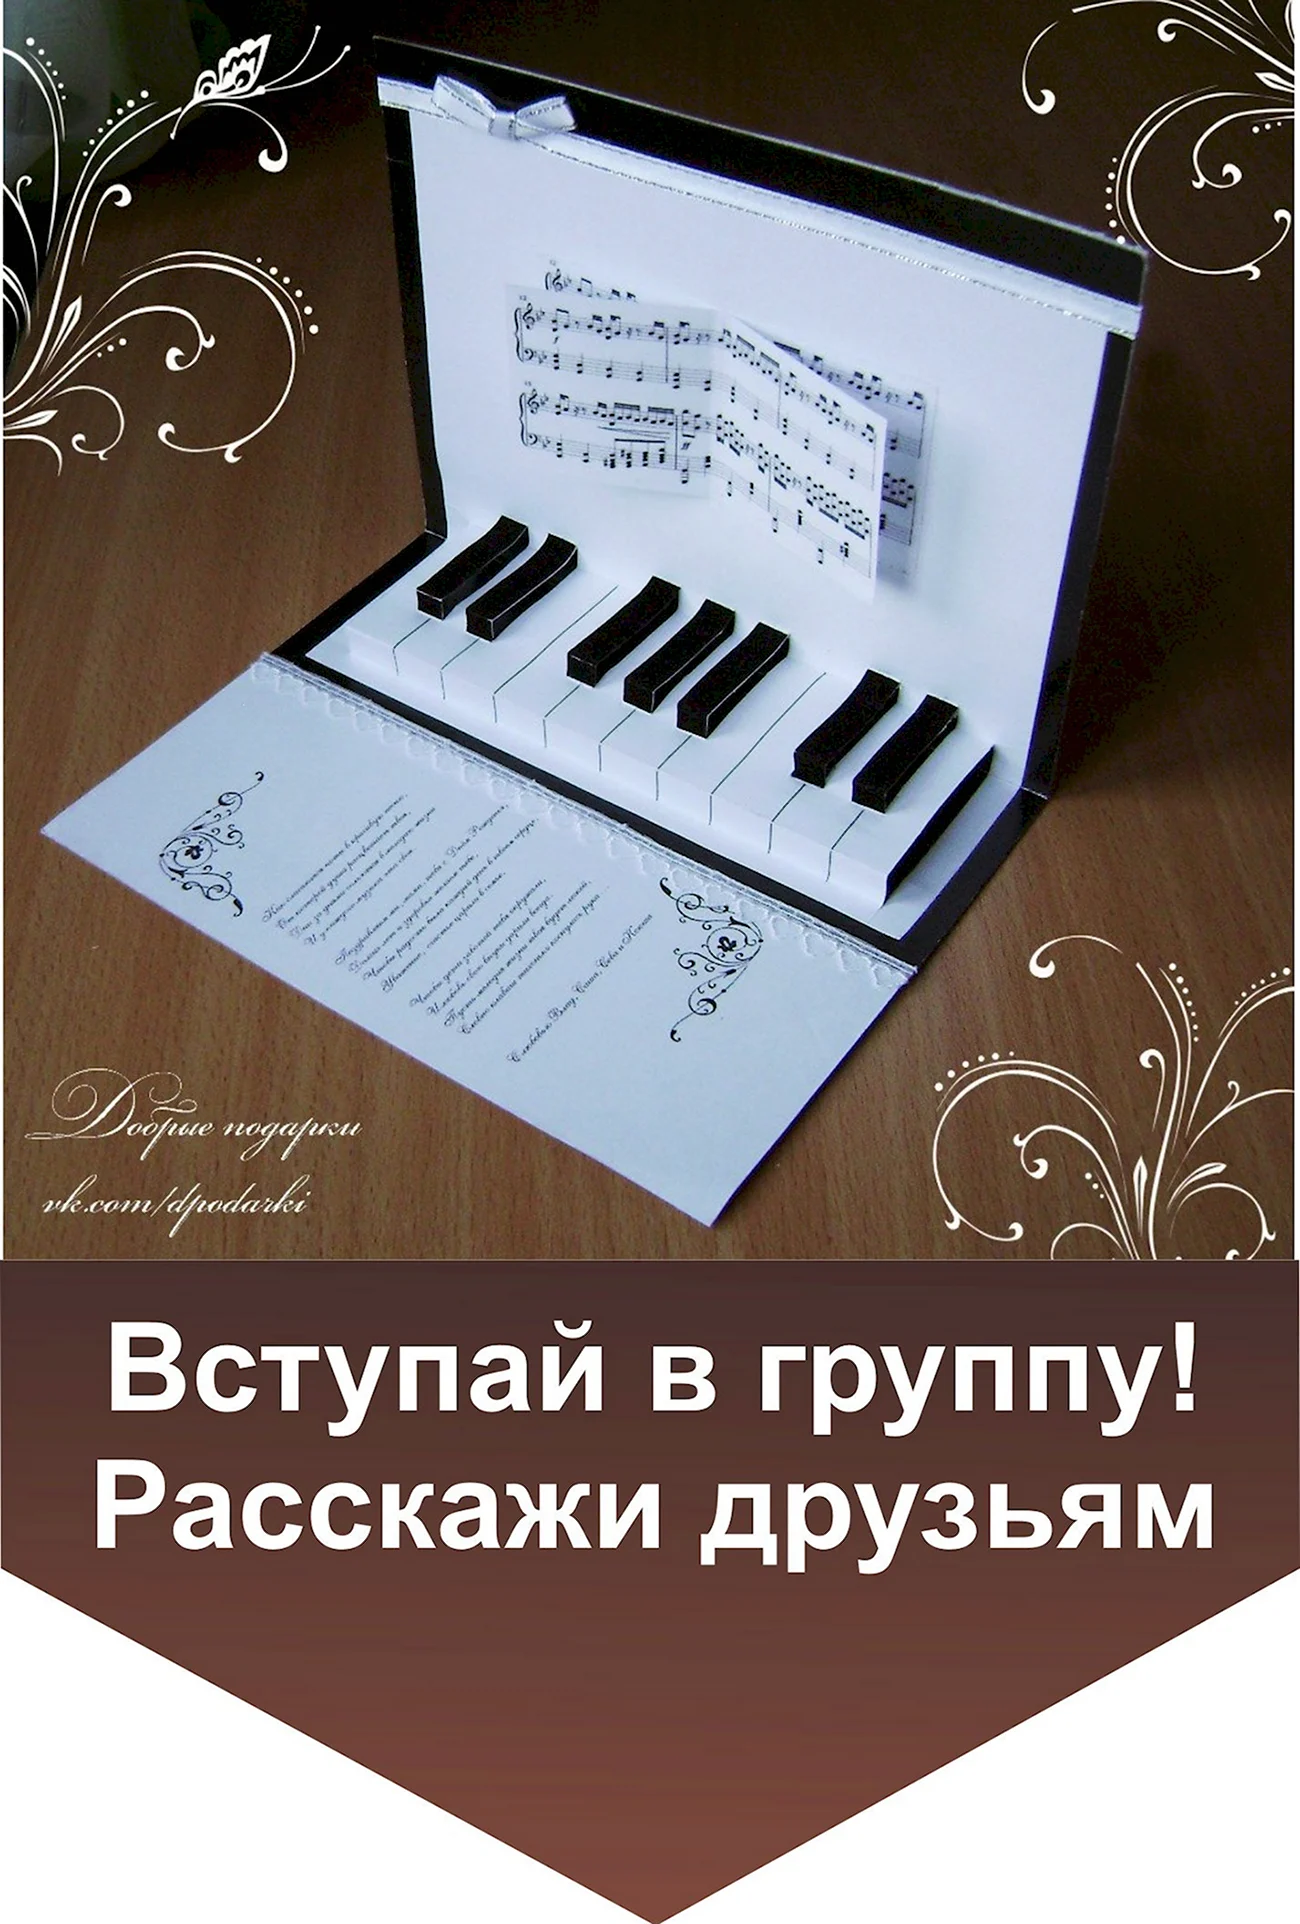 Открытка для учителя фортепьяно. Красивая картинка